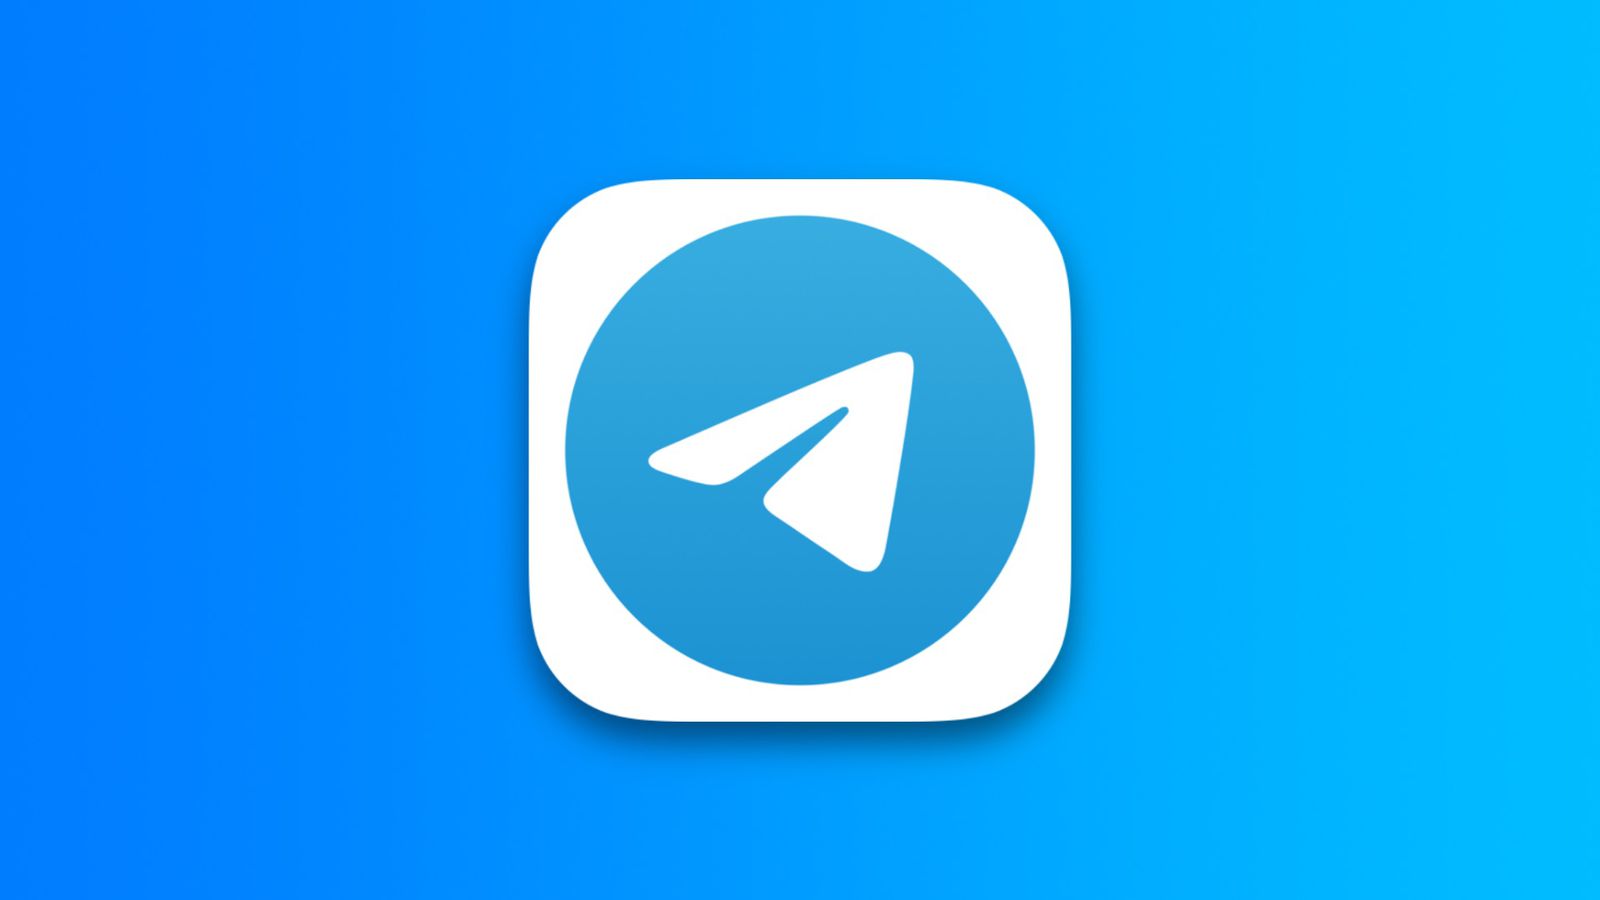 В Telegram появился каталог приложений и обновлённый браузер